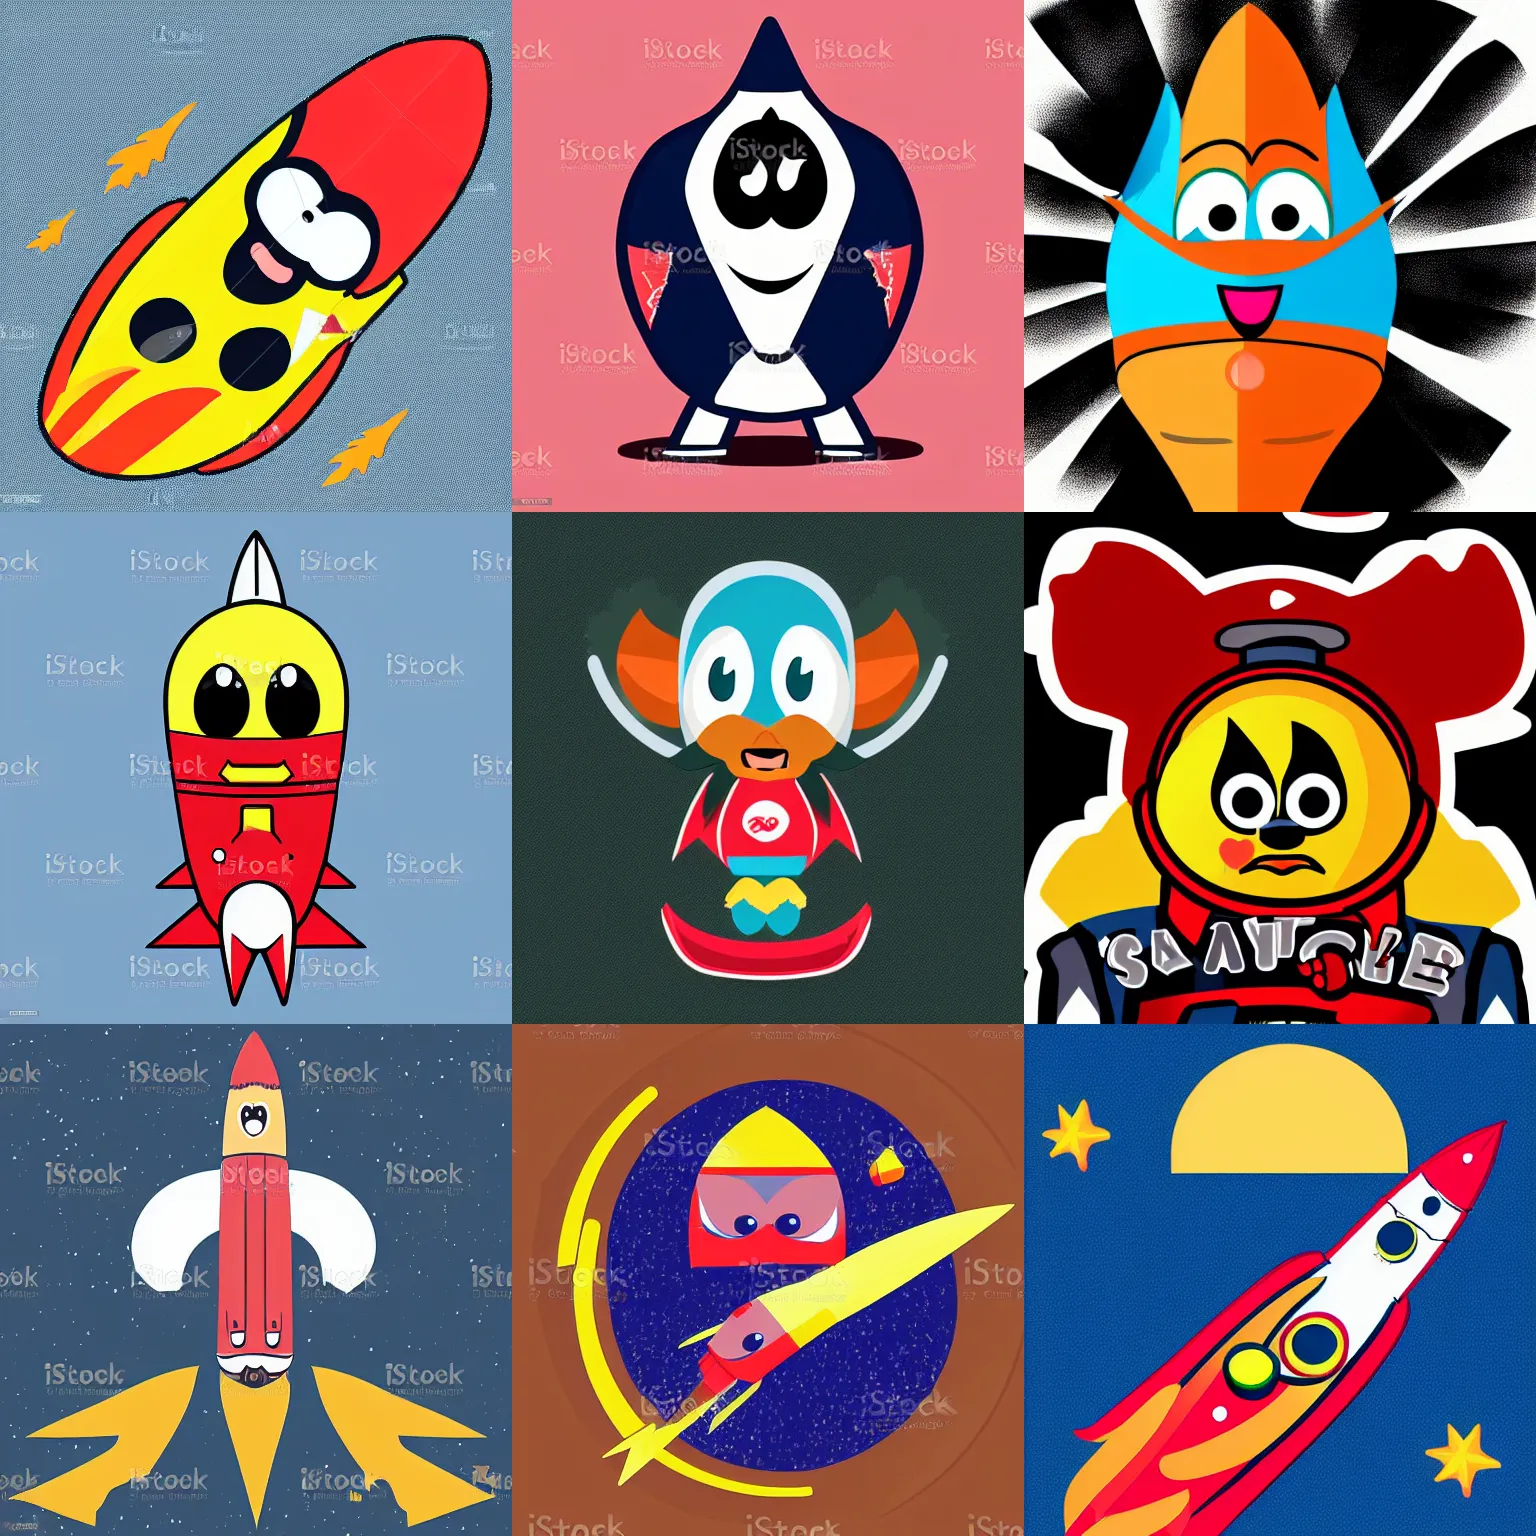 Prompt: vector art of a sad rocket mascot character